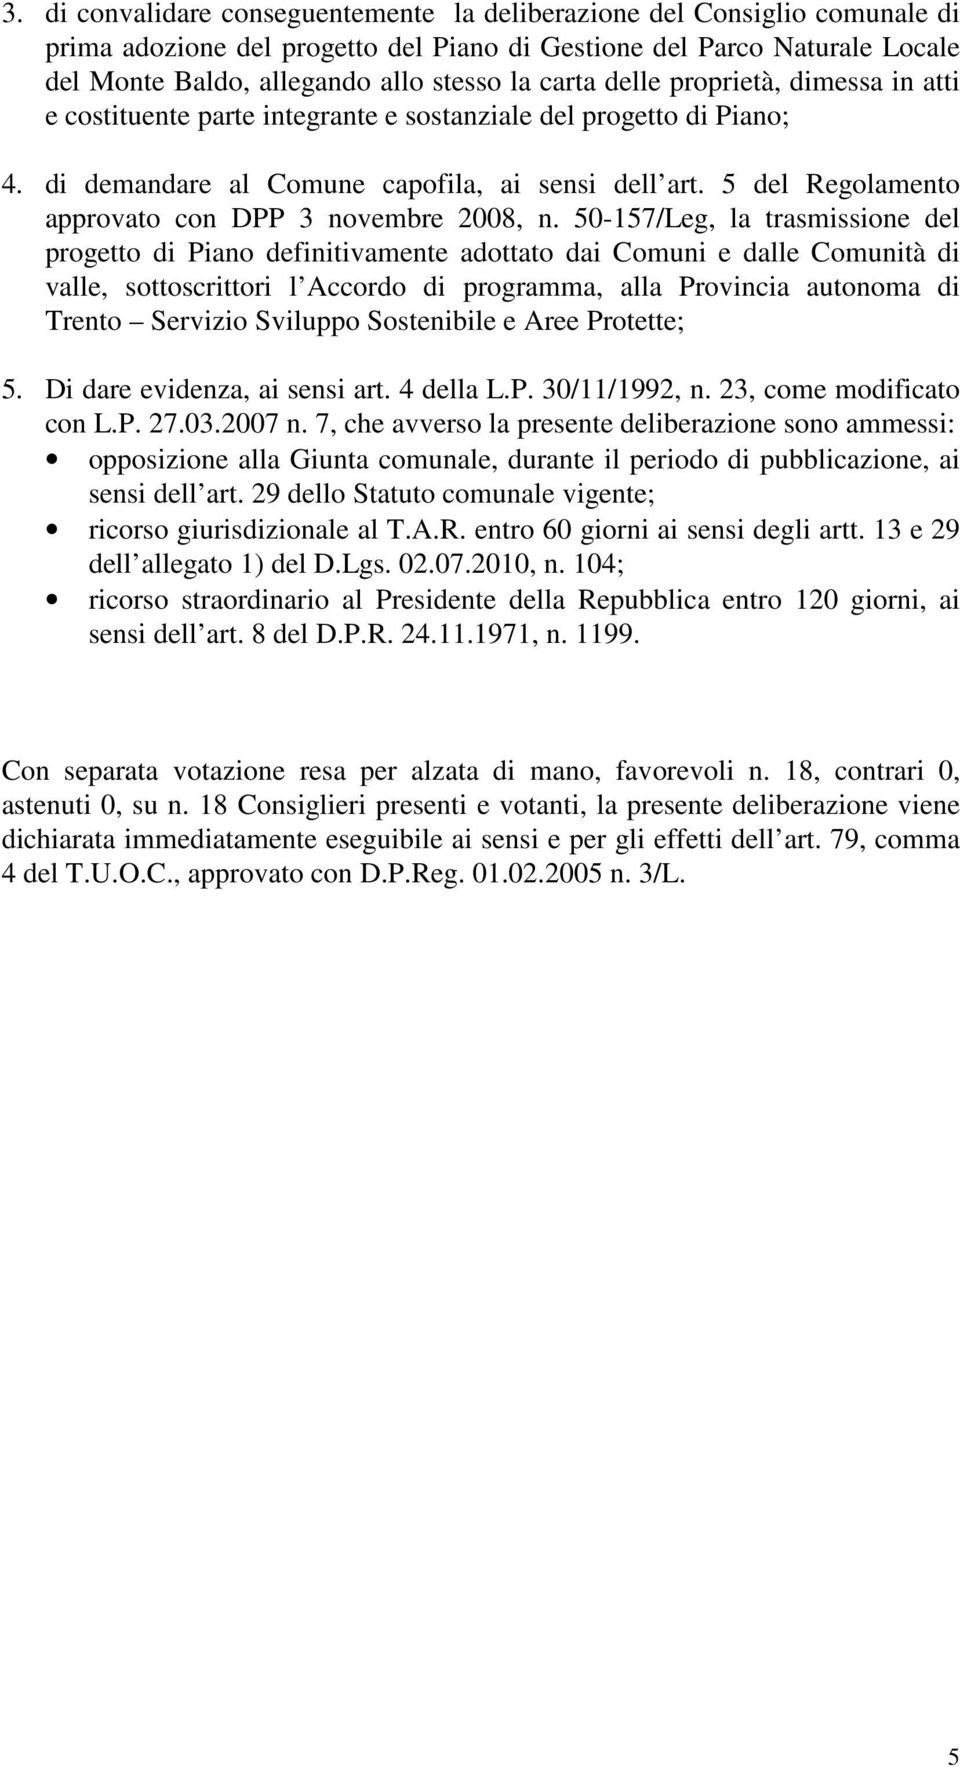 5 del Regolamento approvato con DPP 3 novembre 2008, n.